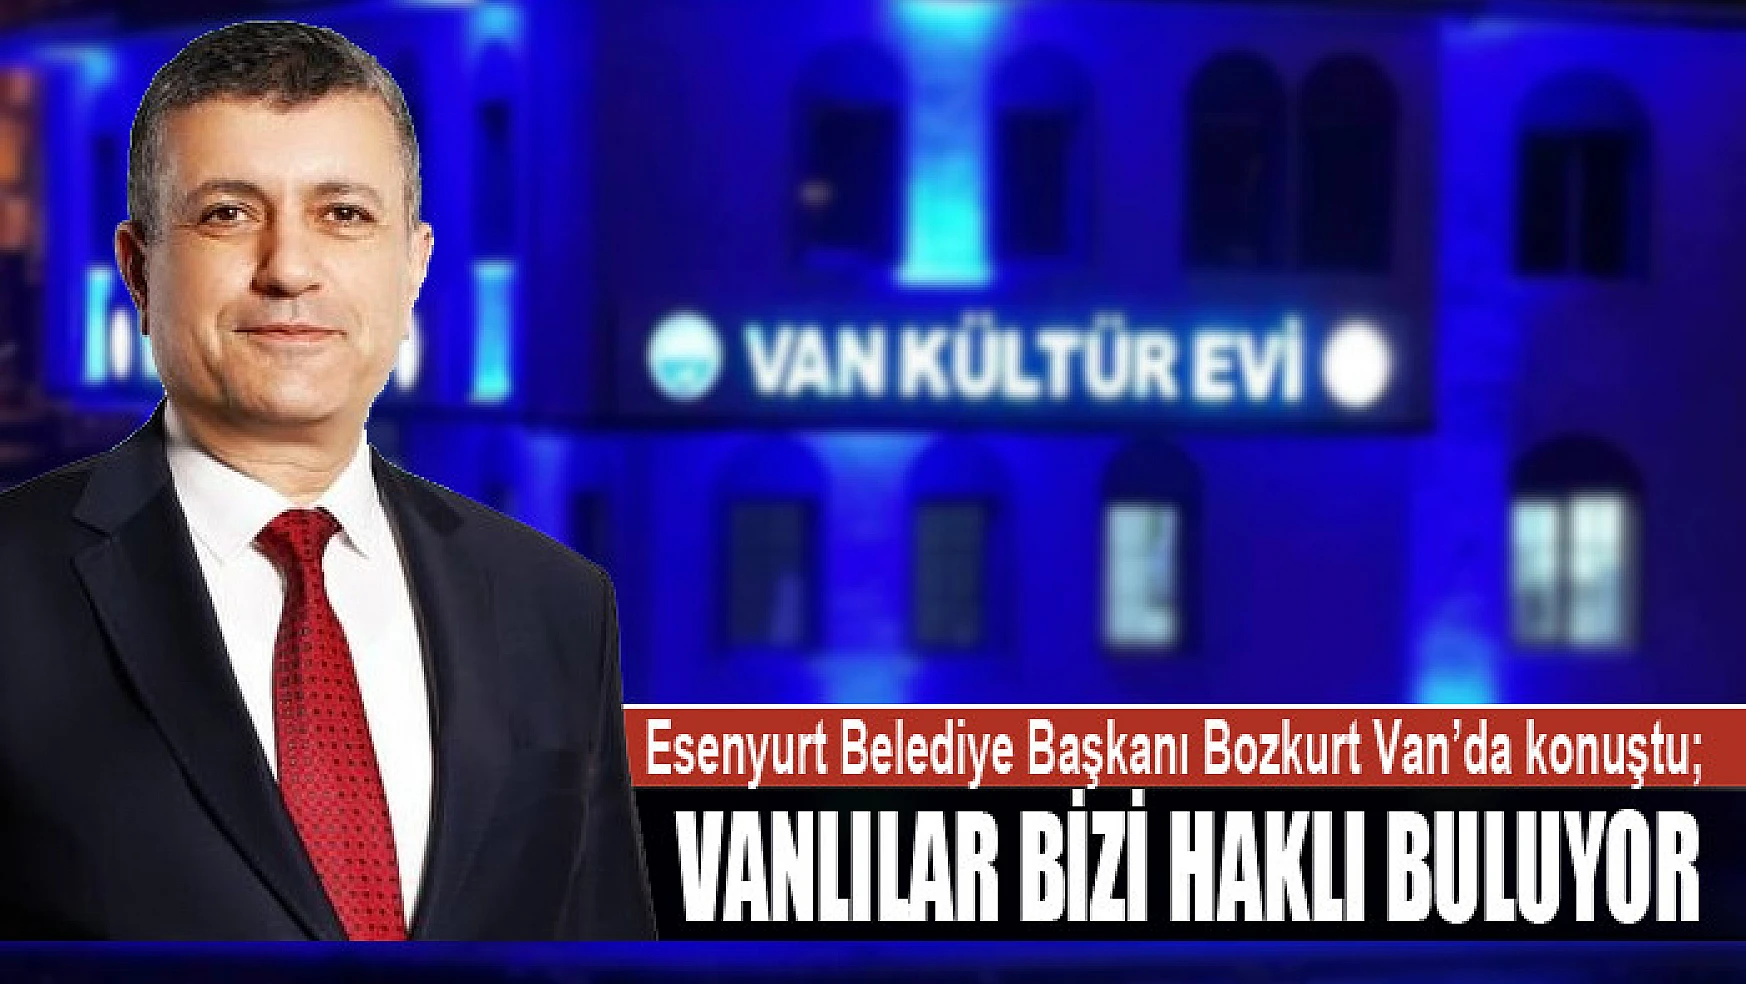 Esenyurt Belediye Başkanı Bozkurt İstanbul Van Kültür Evi hakkında konuştu Vanlılar bizi haklı buluyor